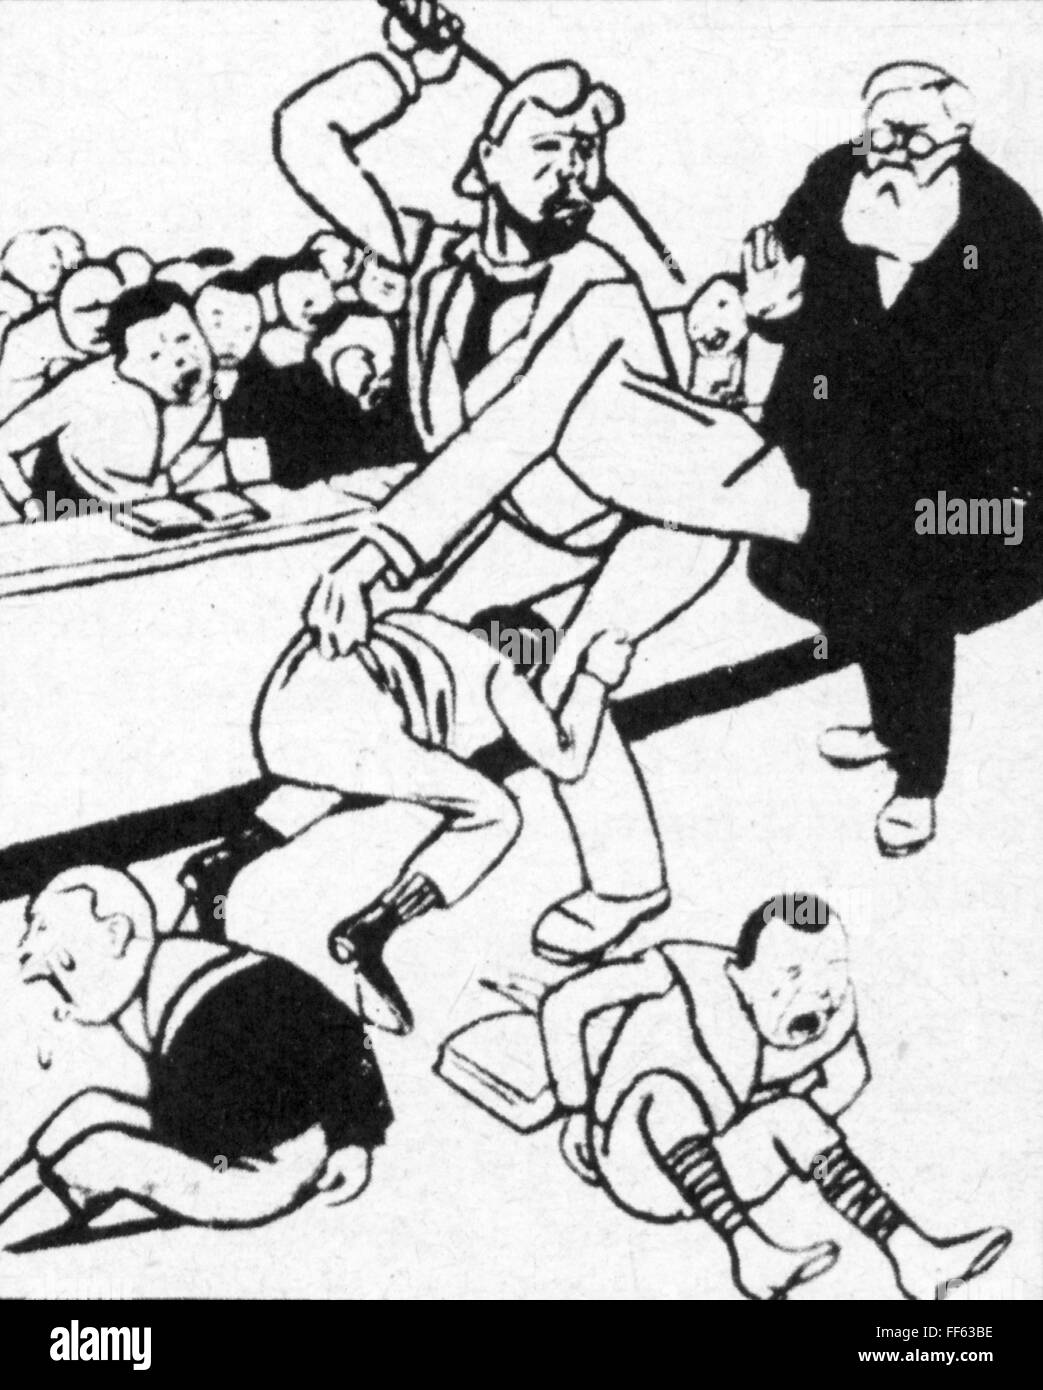 Pädagogik, Karikatur, Verfechtung an einer preußischen Schule, Zeichnung, aus einer Arbeiterzeitung, 1905, Zusatzrechte-Clearences-nicht vorhanden Stockfoto